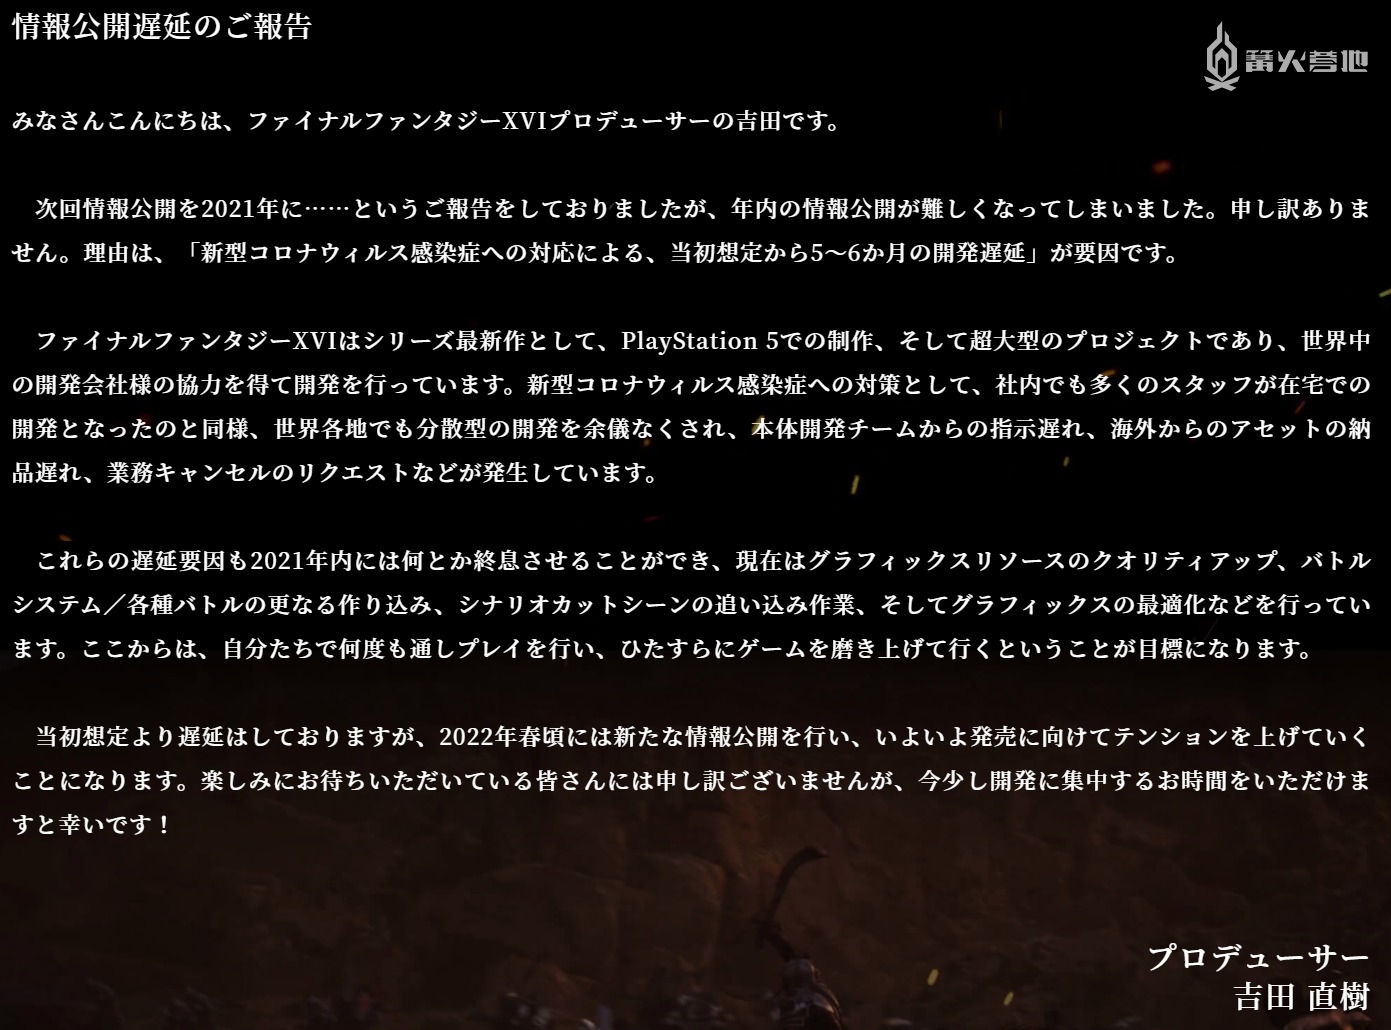 《最终幻想 16》新情报发布会延期至 2022 年春